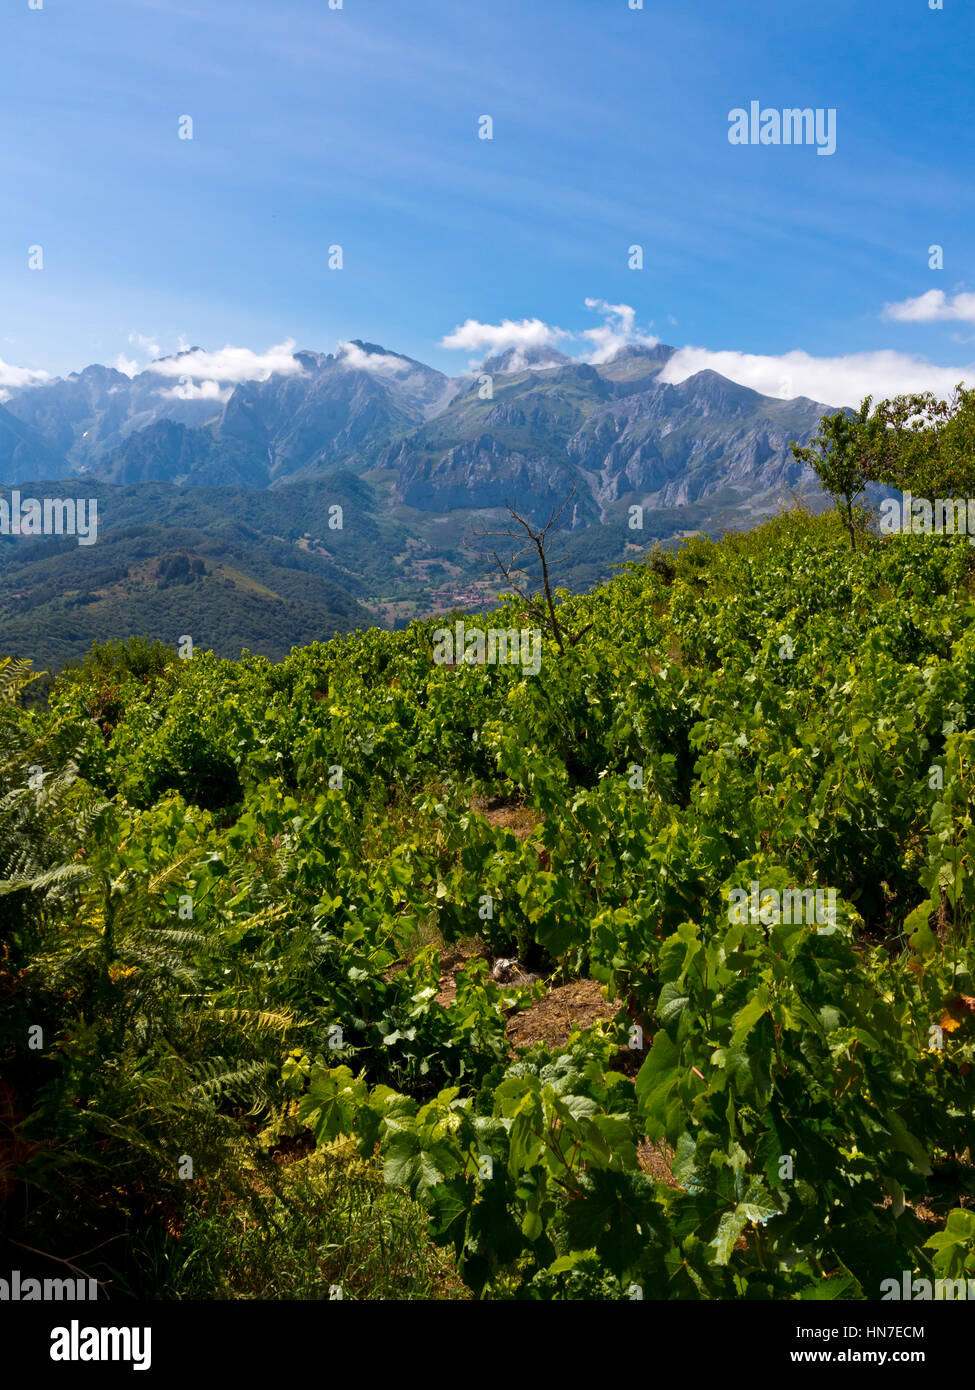 Paysage de montagne avec vignoble près de Pumarena dans le Parc National de Picos de Europa Cantabria Espagne du nord Banque D'Images